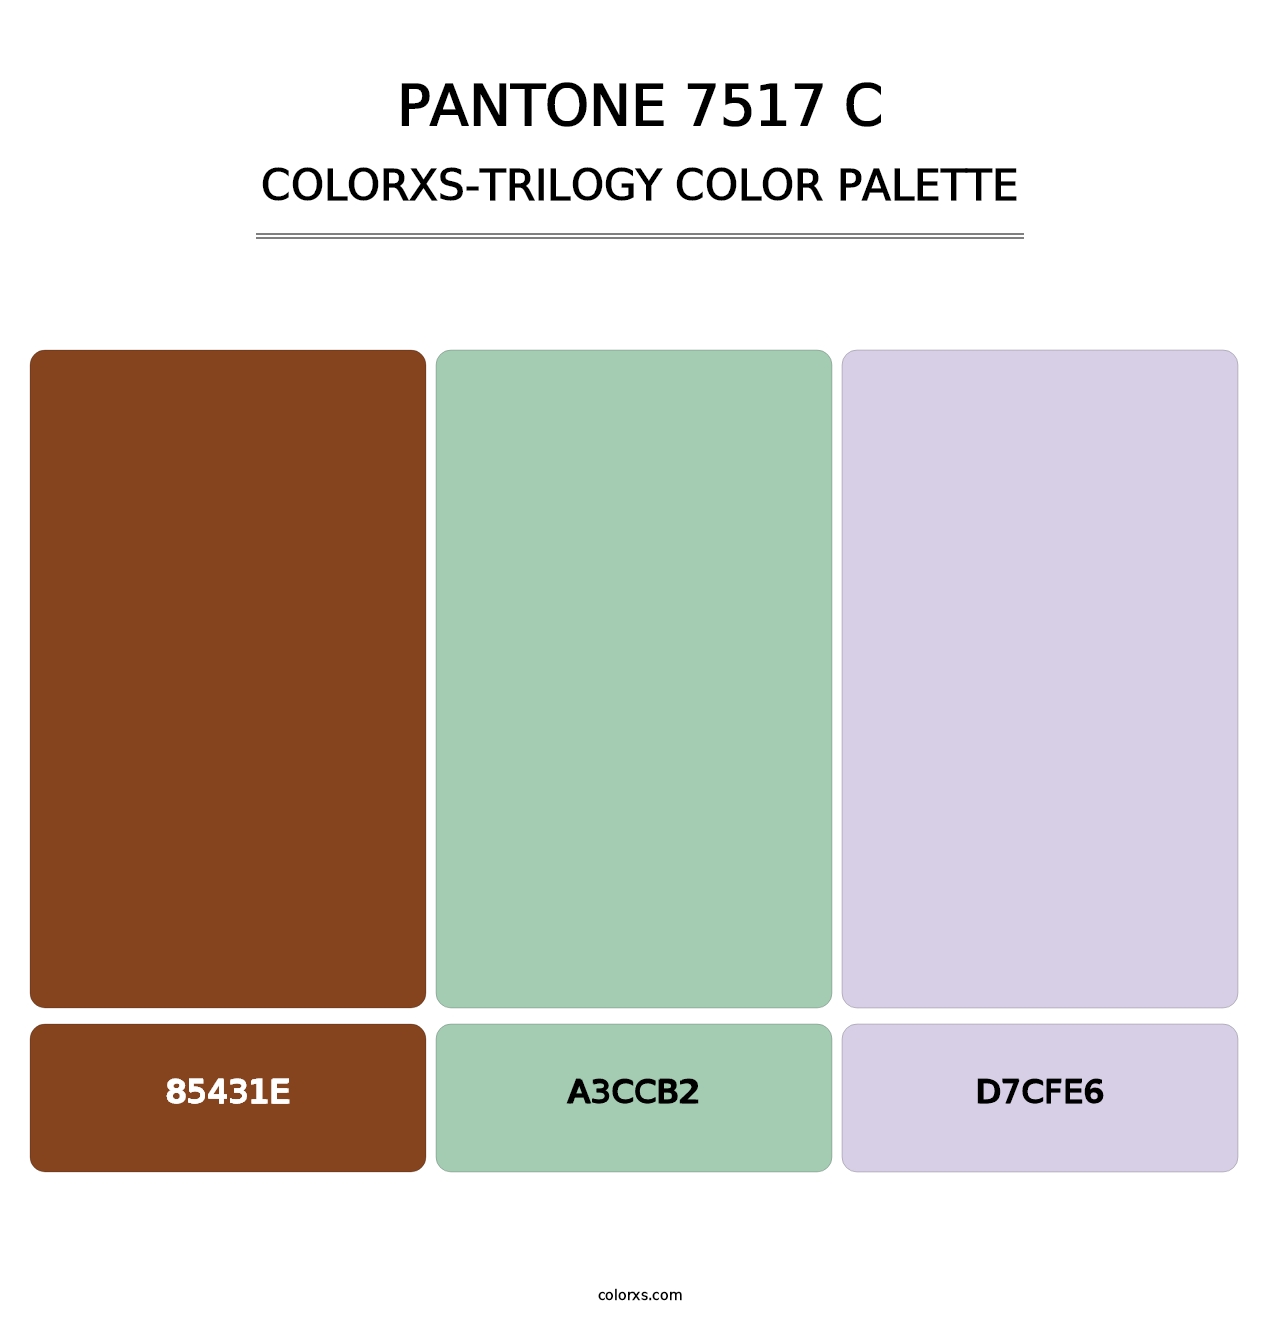 PANTONE 7517 C - Colorxs Trilogy Palette